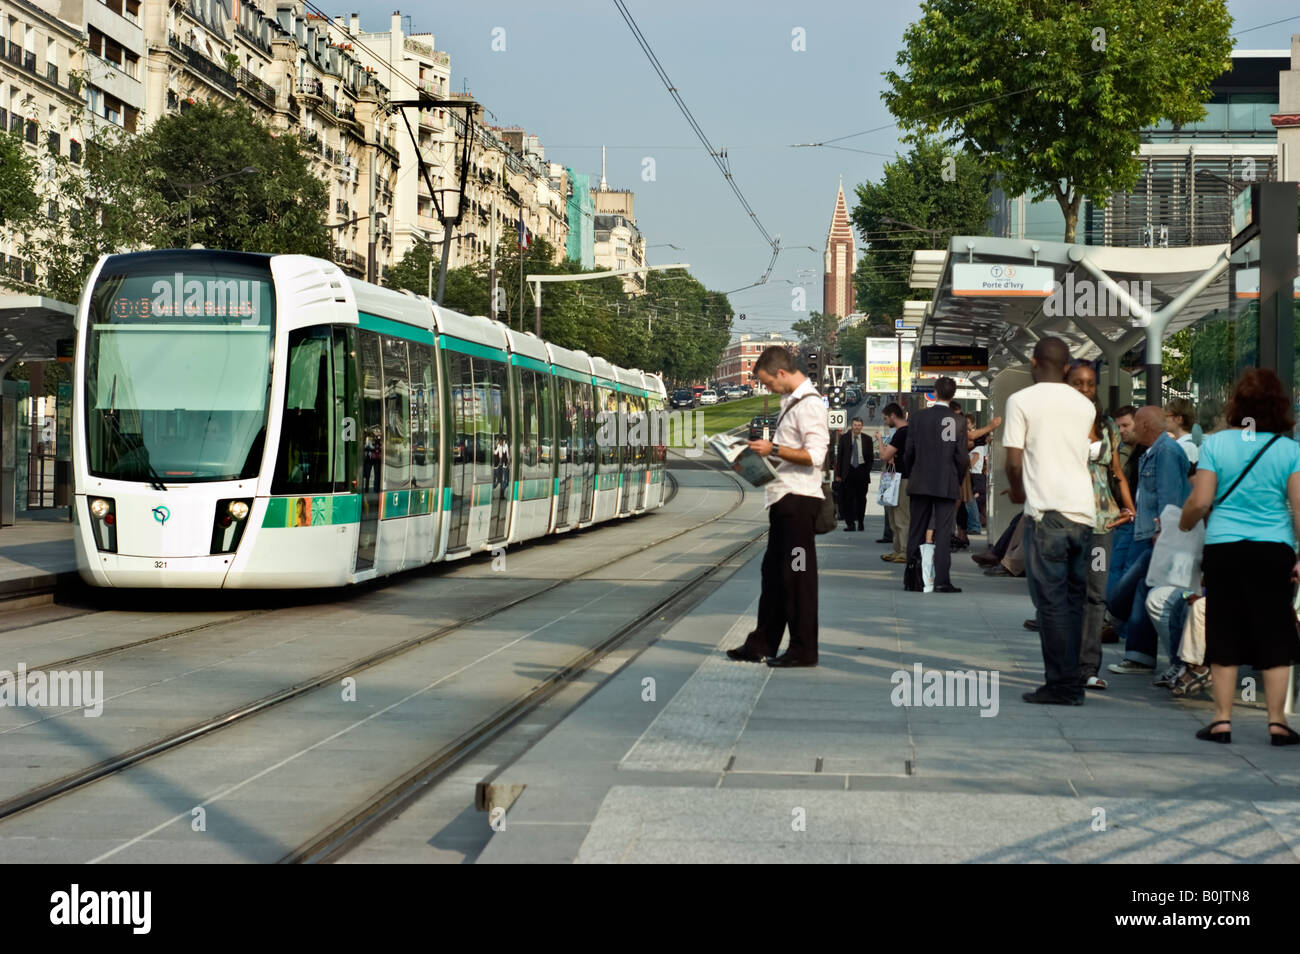 Paris France, crowd platform Public Transportation People Using Tram Line  Station, commute trains, tram paris Stock Photo - Alamy